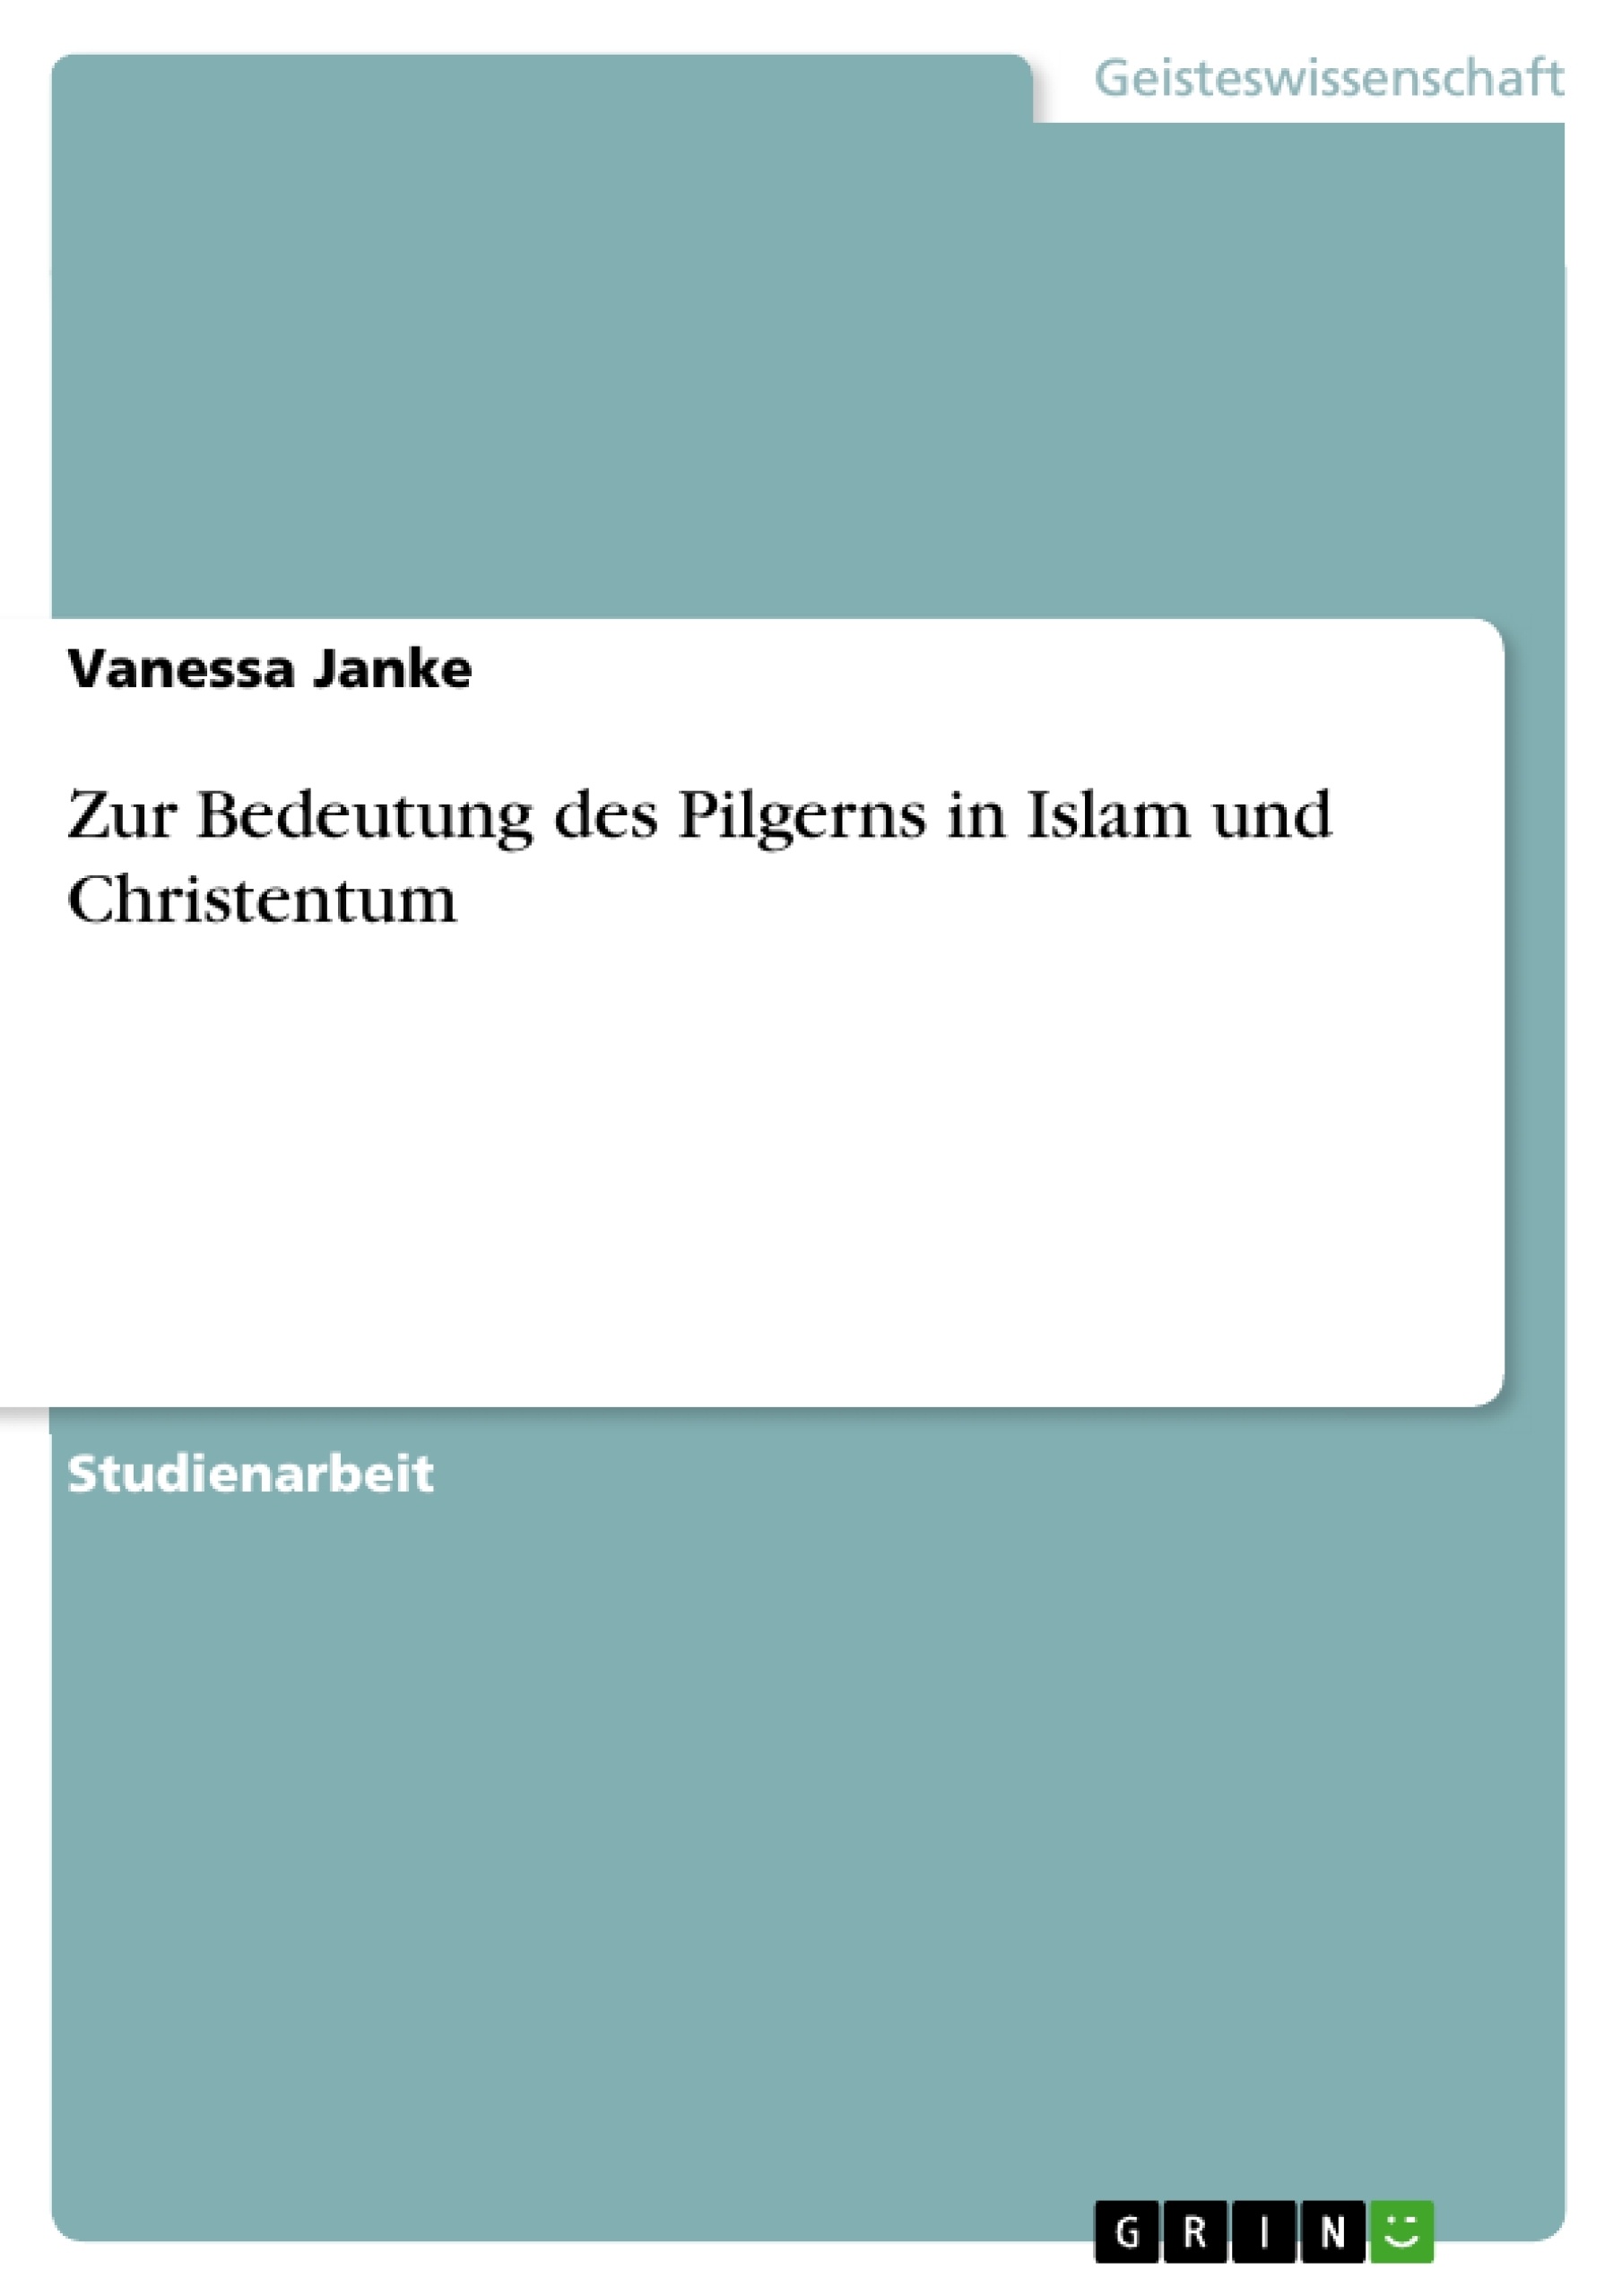 Titre: Zur Bedeutung des Pilgerns in Islam und Christentum